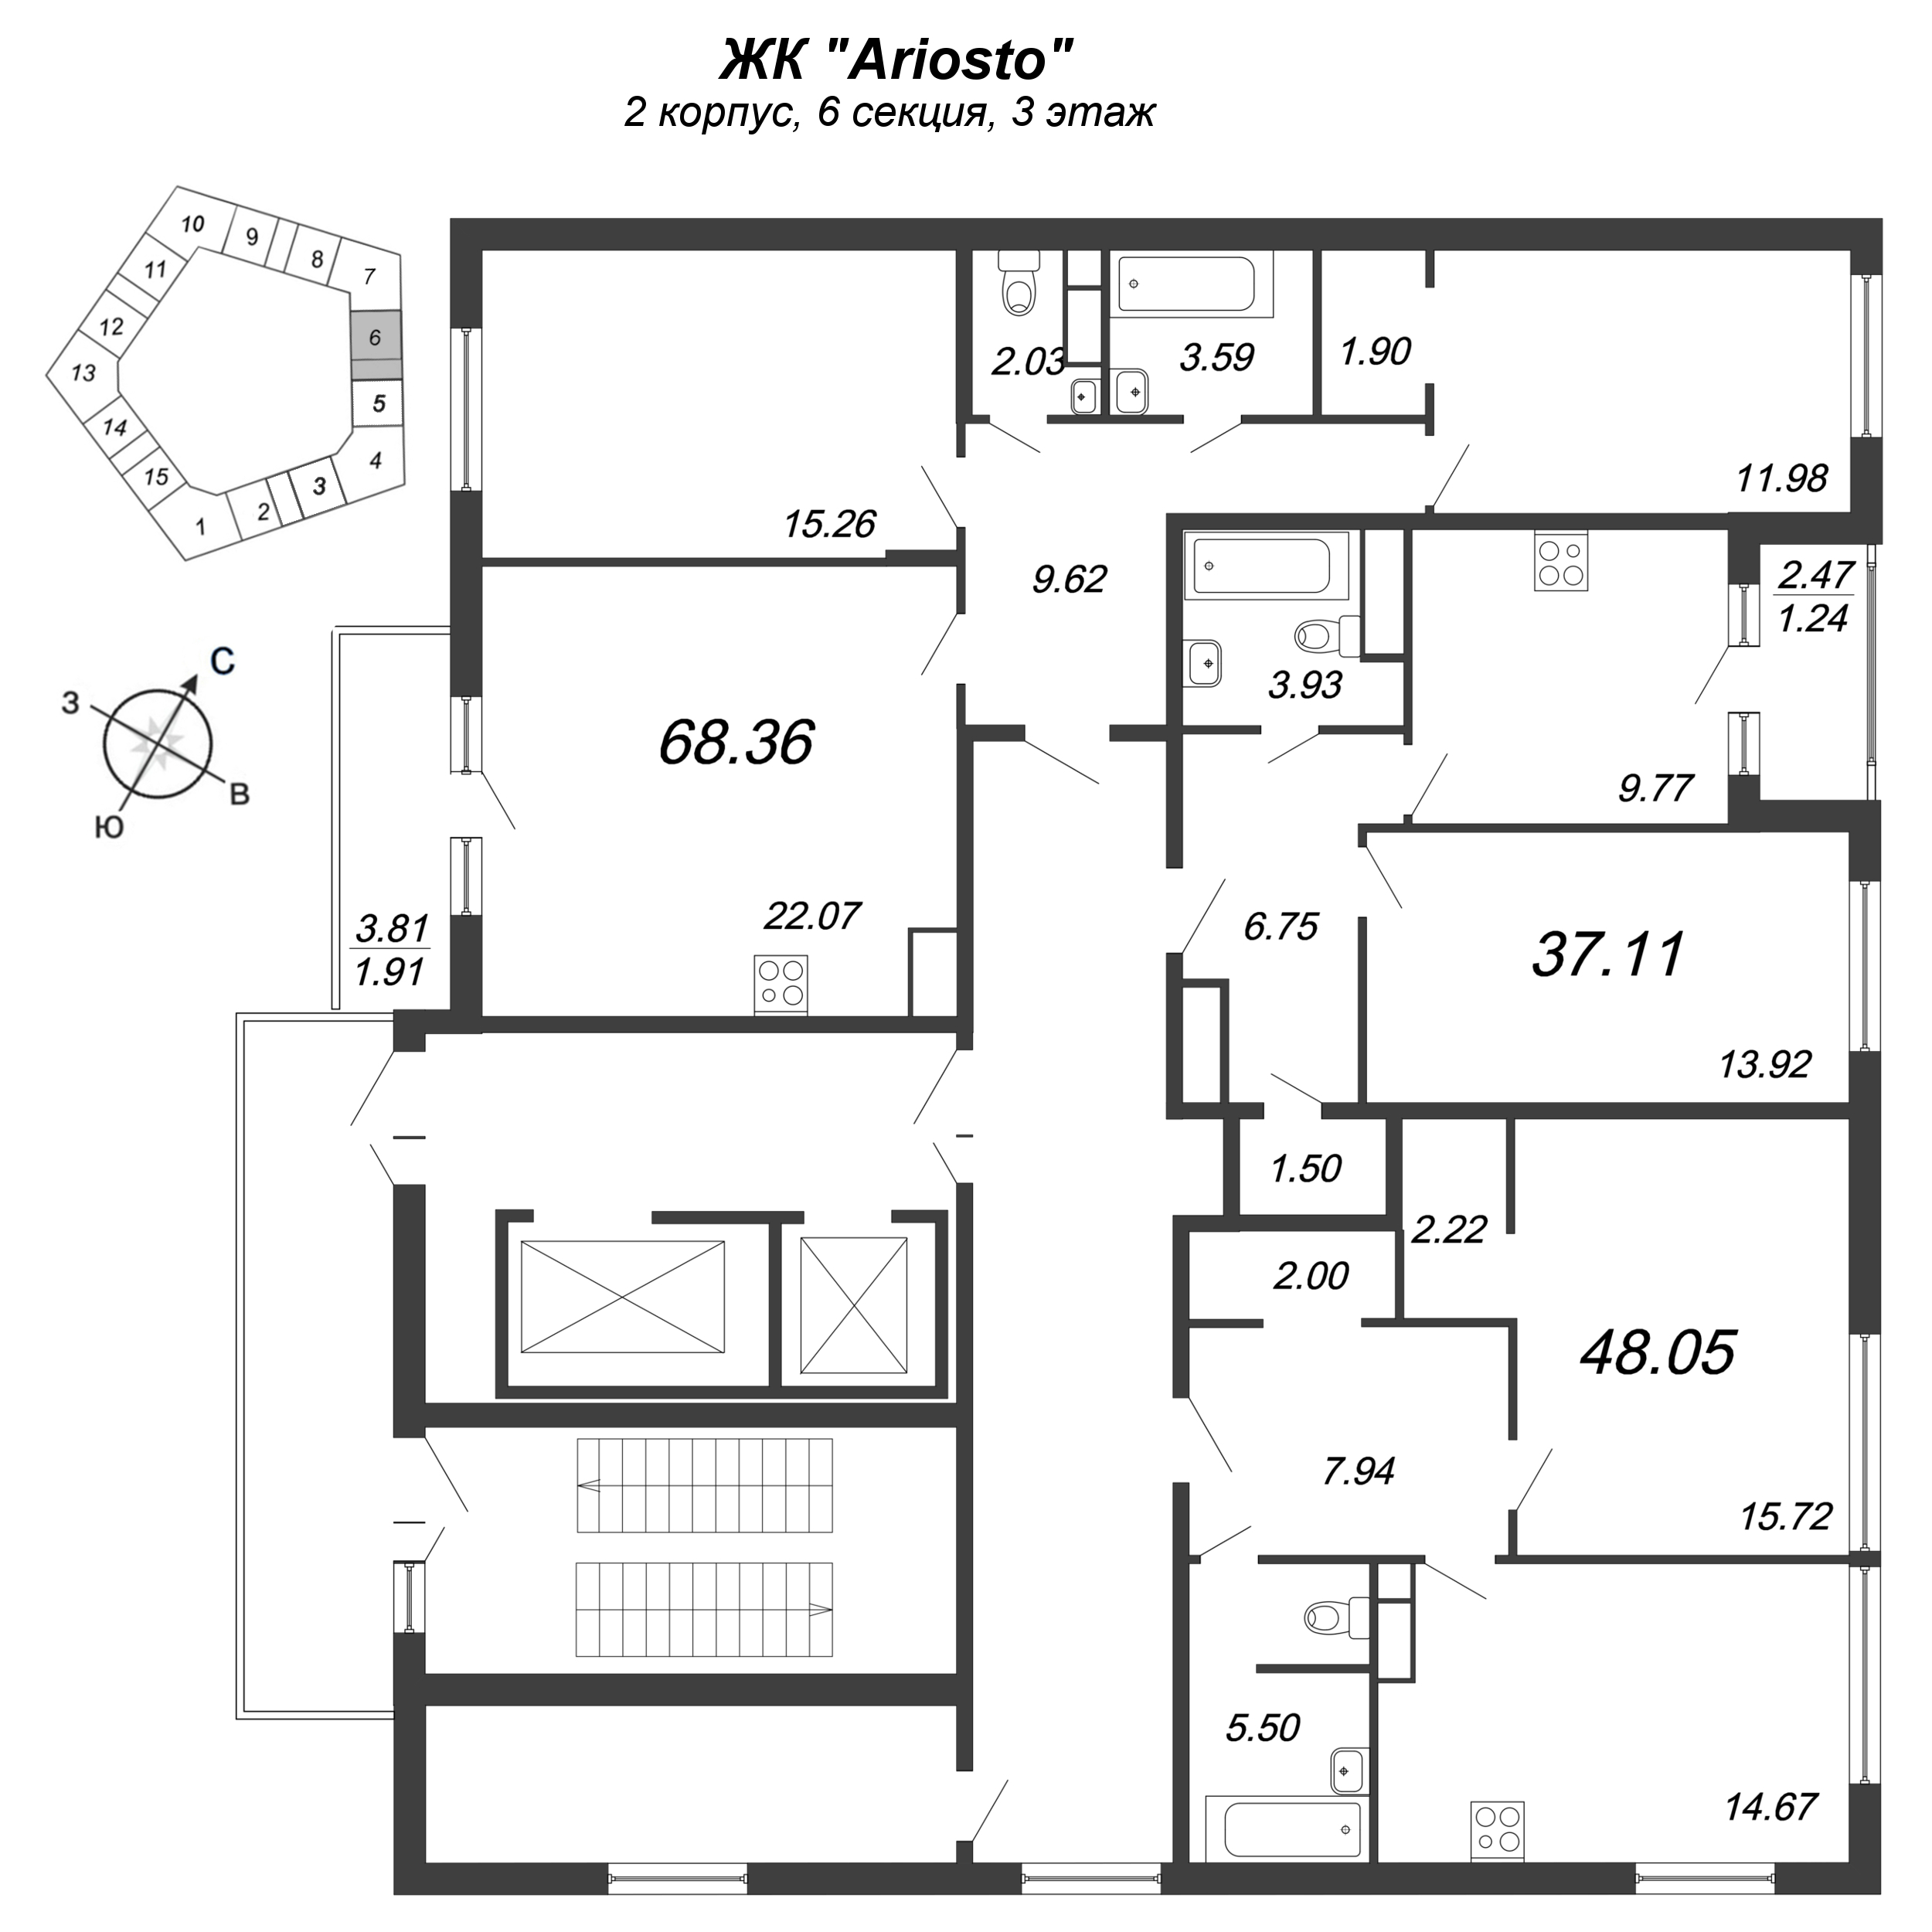 1-комнатная квартира, 48.05 м² в ЖК "Ariosto" - планировка этажа